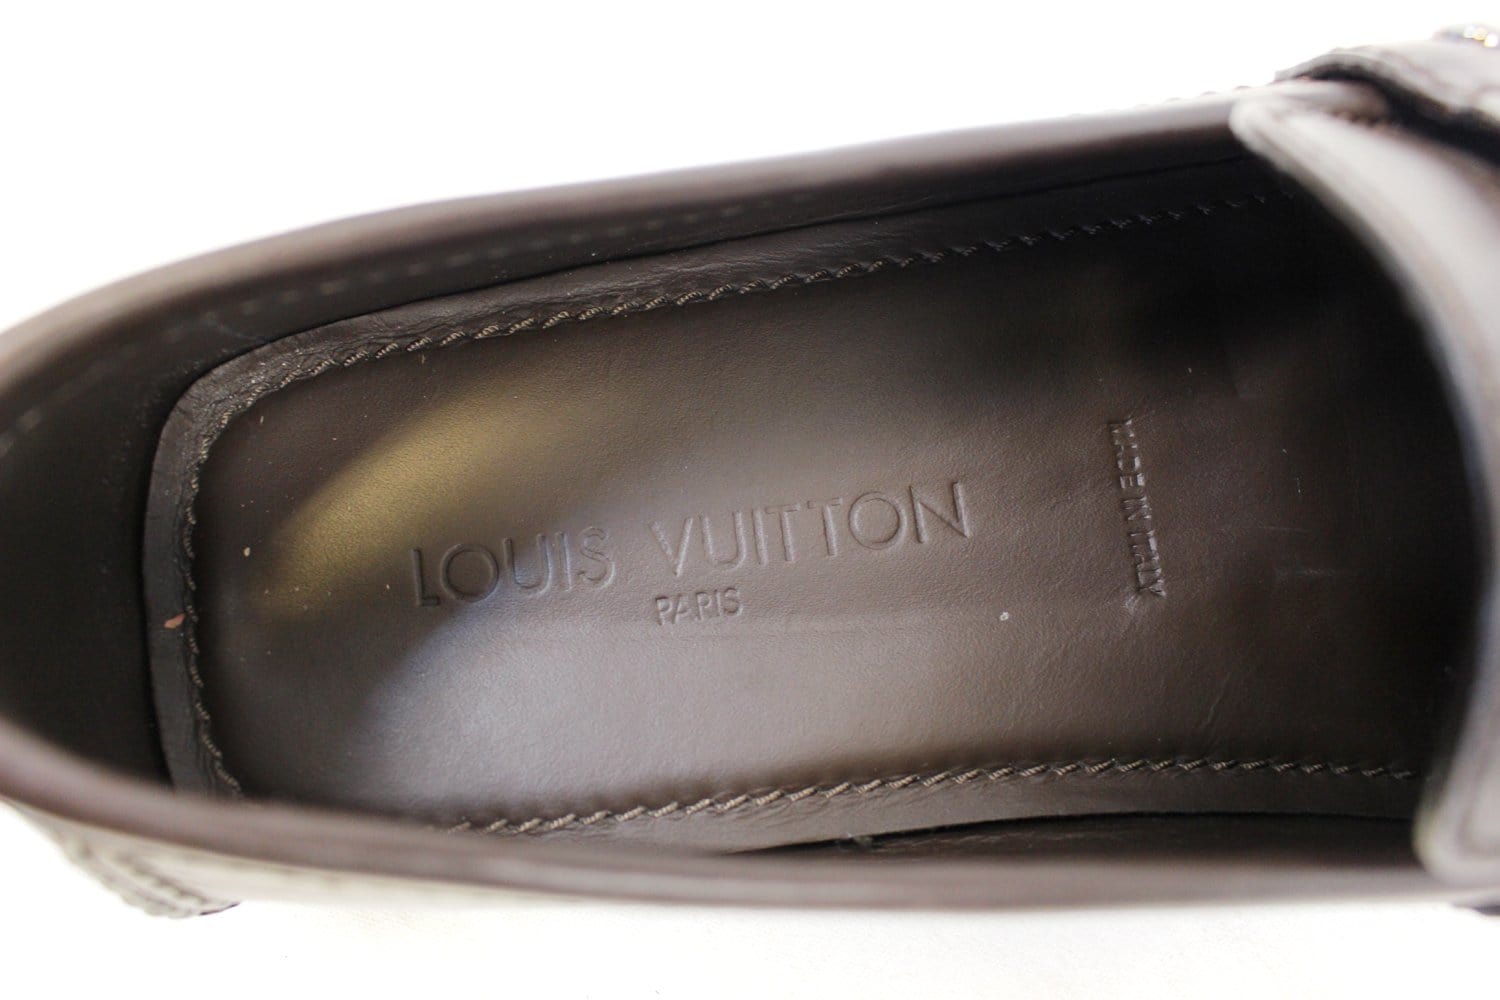 LOUIS VUITTON Men's shoes size 9 - Like New